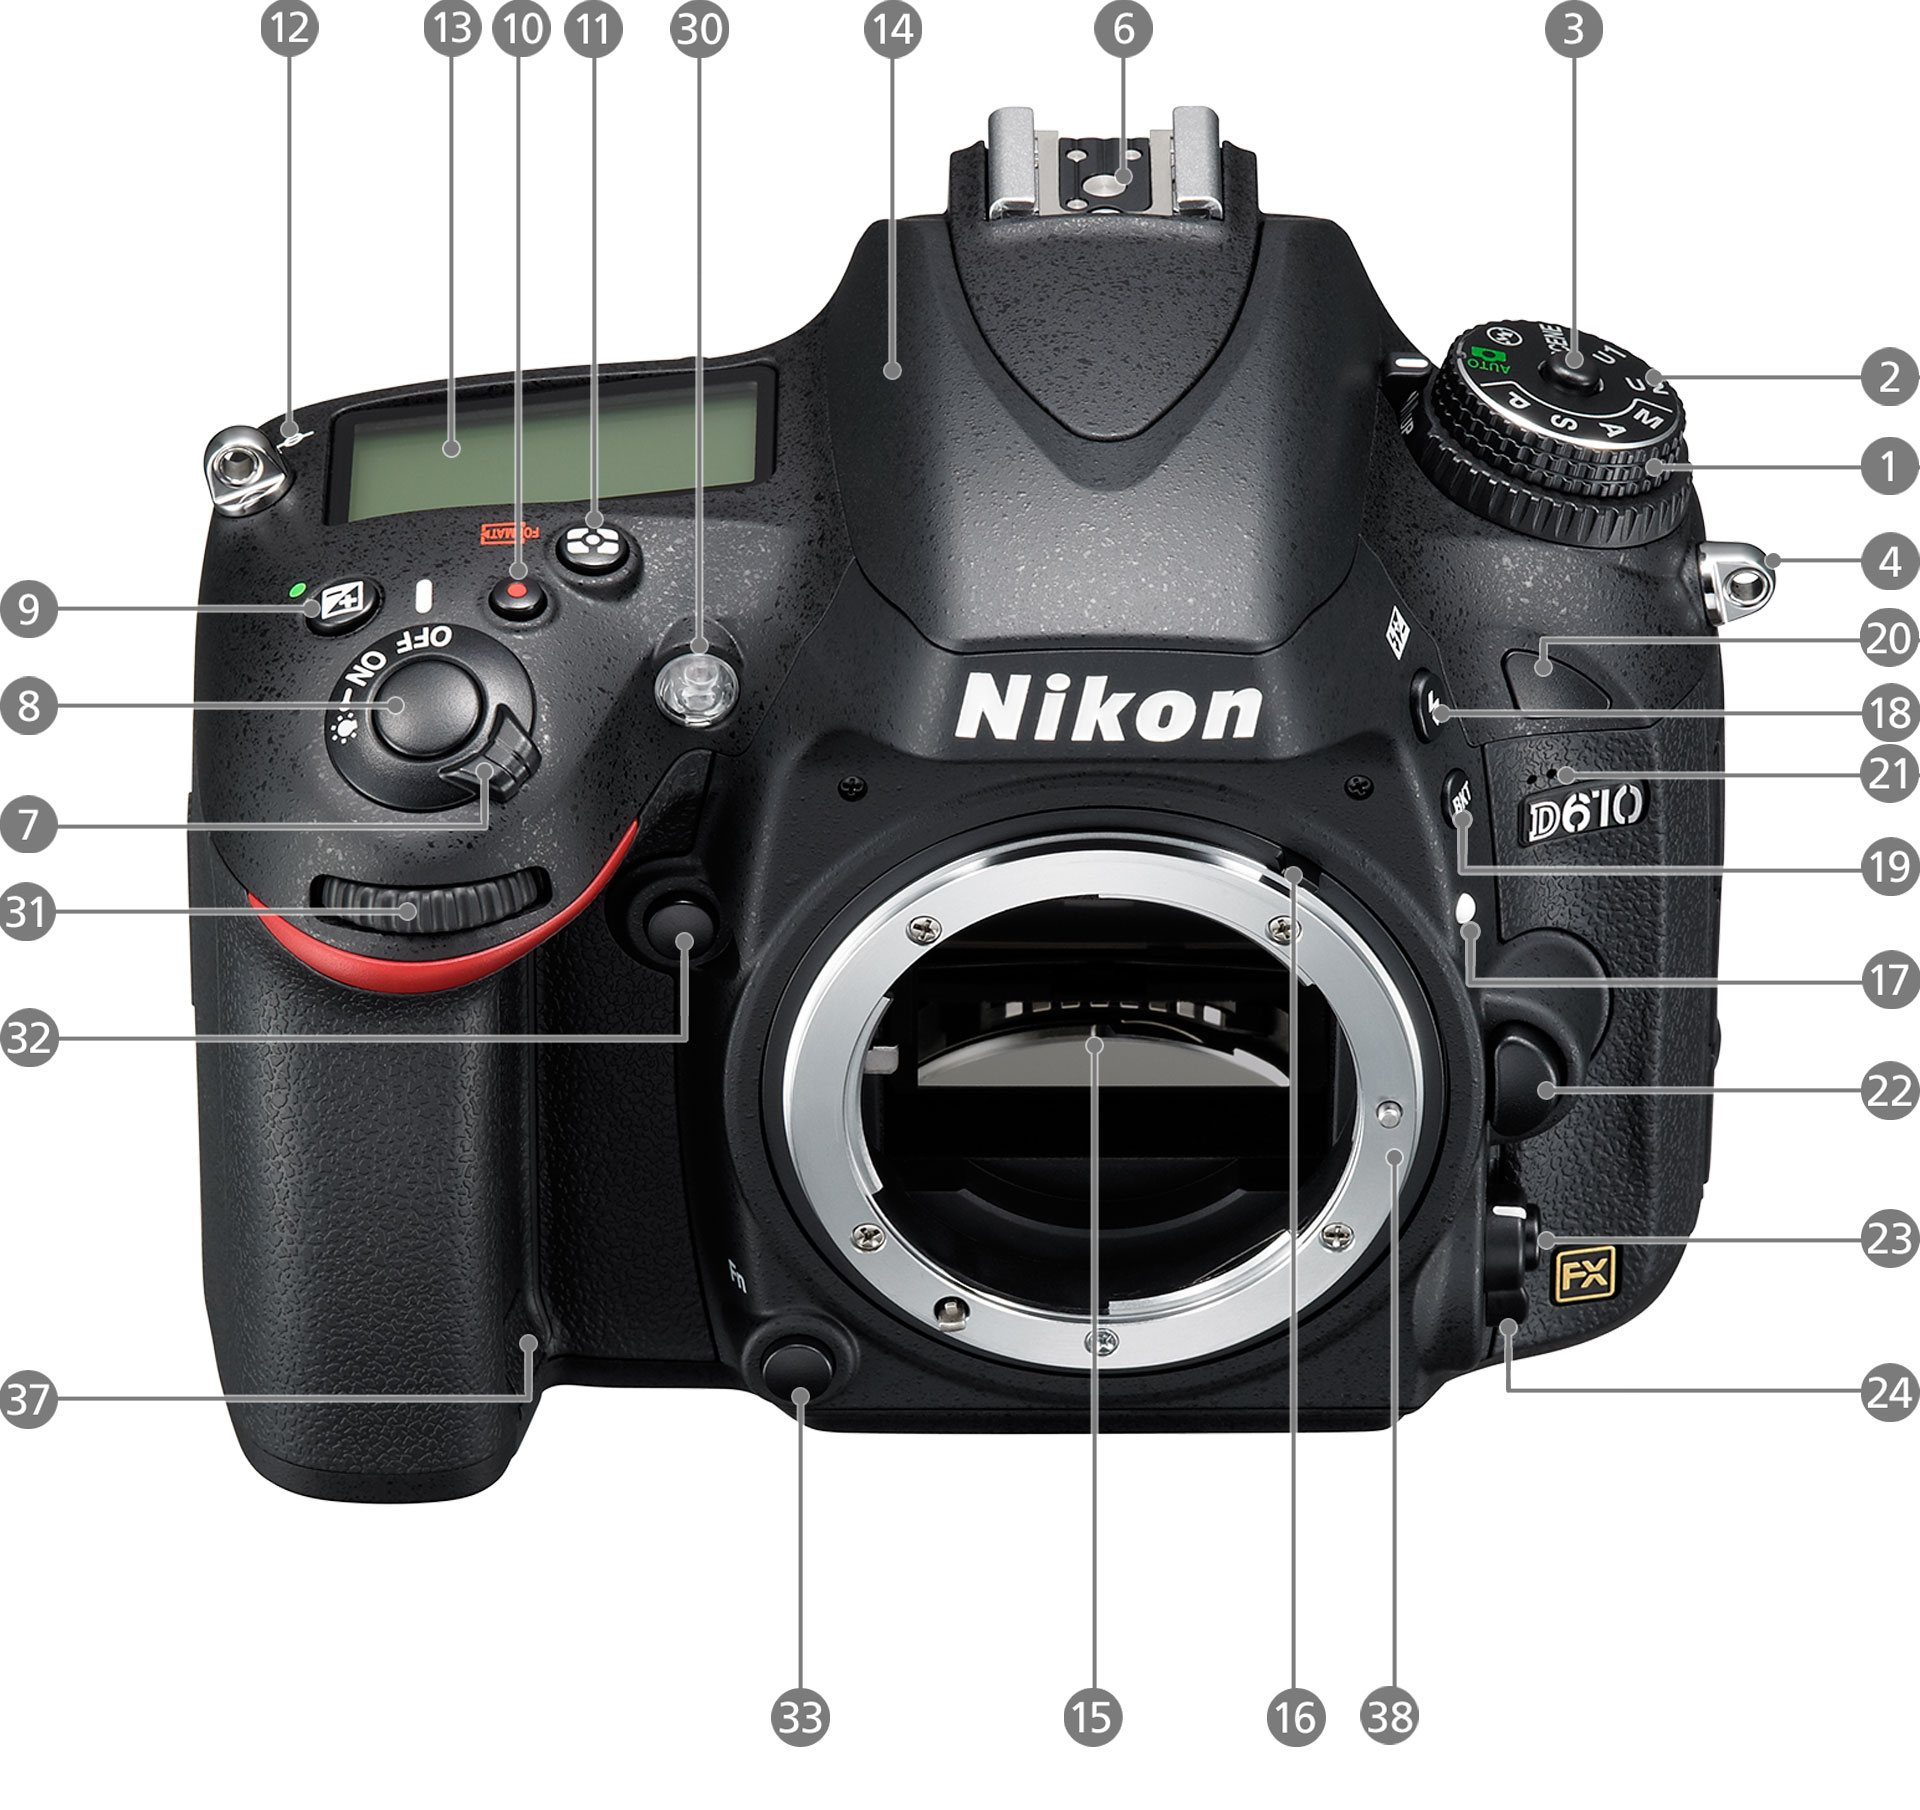 Nikon デジタル一眼レフカメラ D610 :20230717033324-01473us:Septem